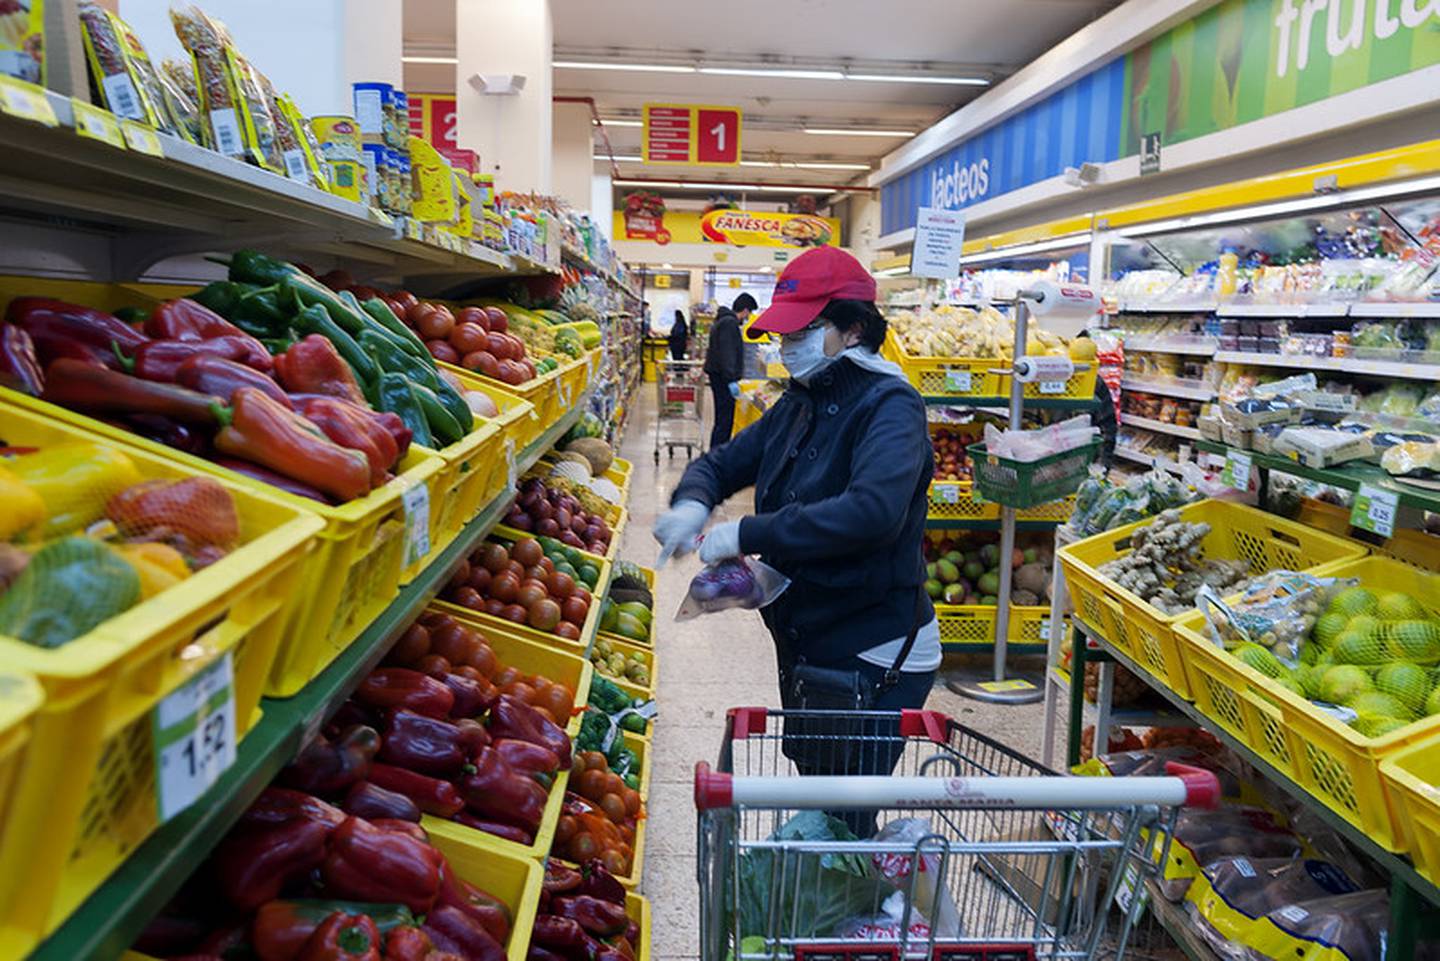 La guerra en Ucrania tendrá un impacto negativo en la producción agrícola de Argentina, Brasil y Uruguay, lo que agregará más presiones a los precios mundiales de los alimentos.dfd